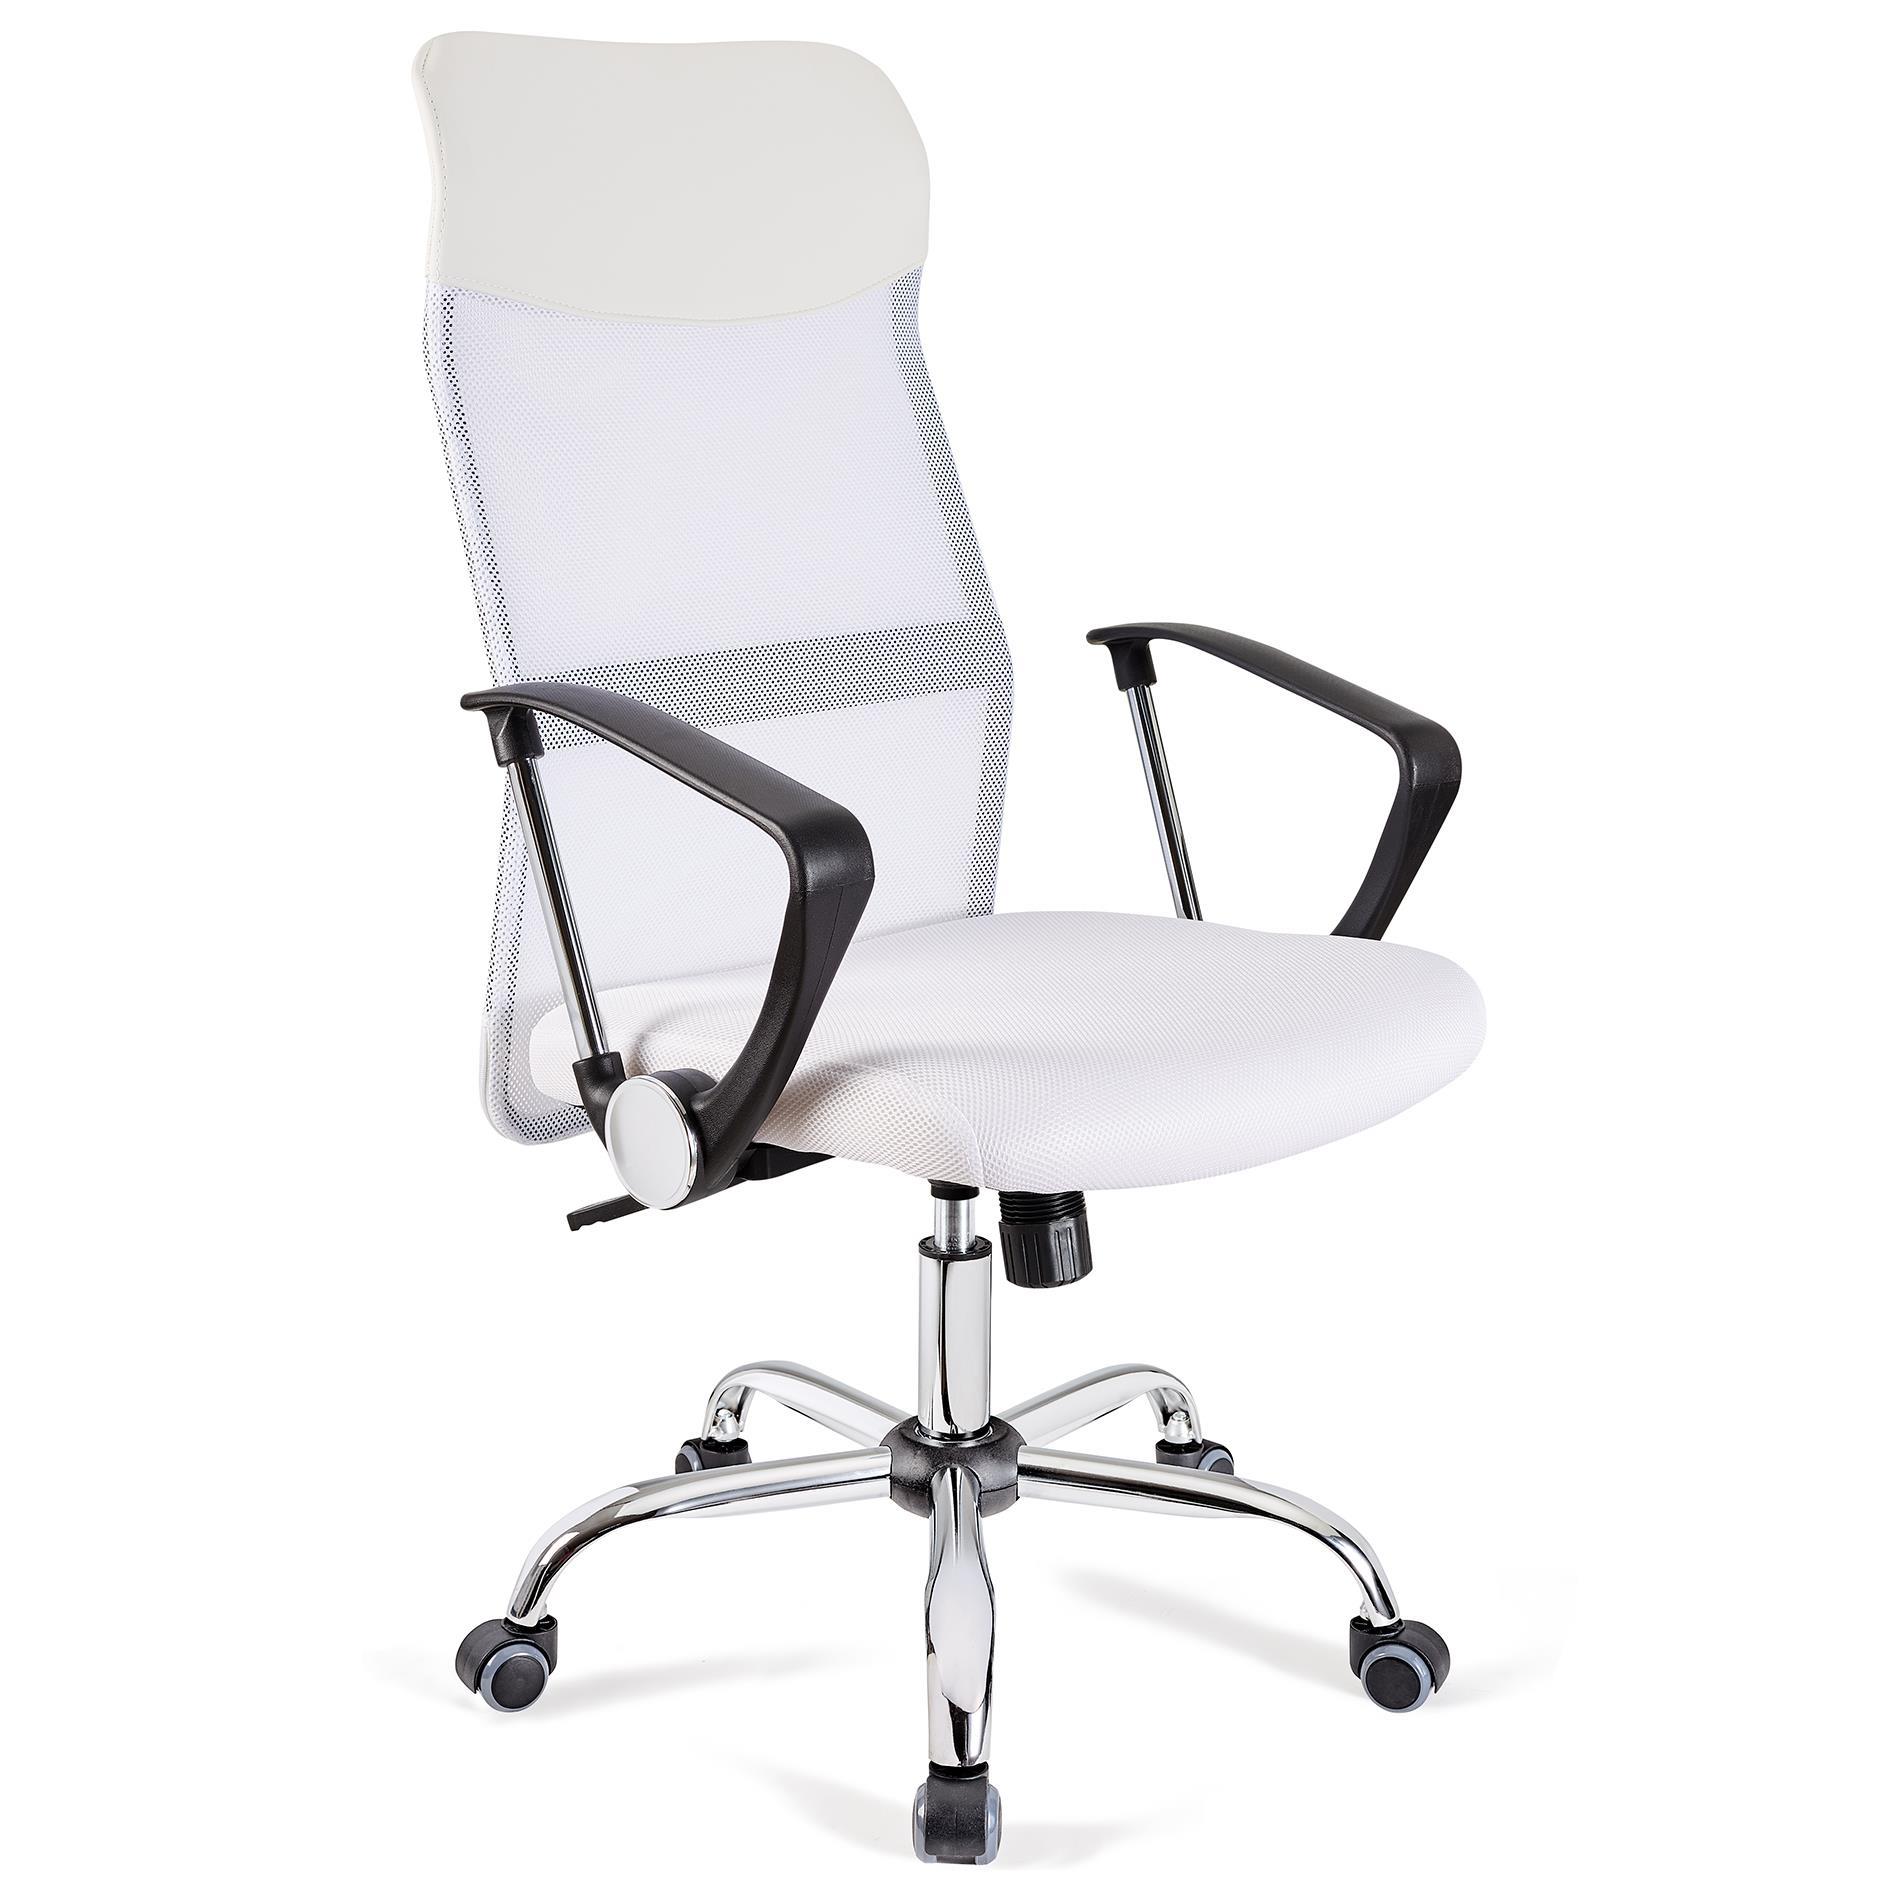 Chaise de bureau ASPEN, Maille Respirable et cuir, assise rembourrée, Prix incroyable, Blanc